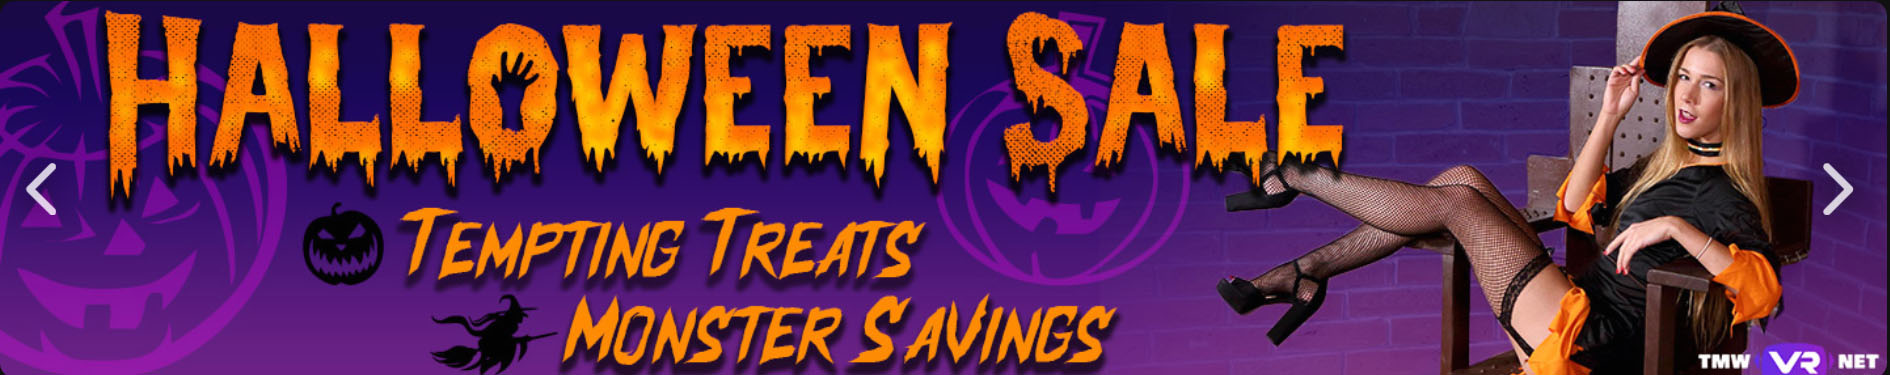 vrporn premium halloween sale 2021 image banner